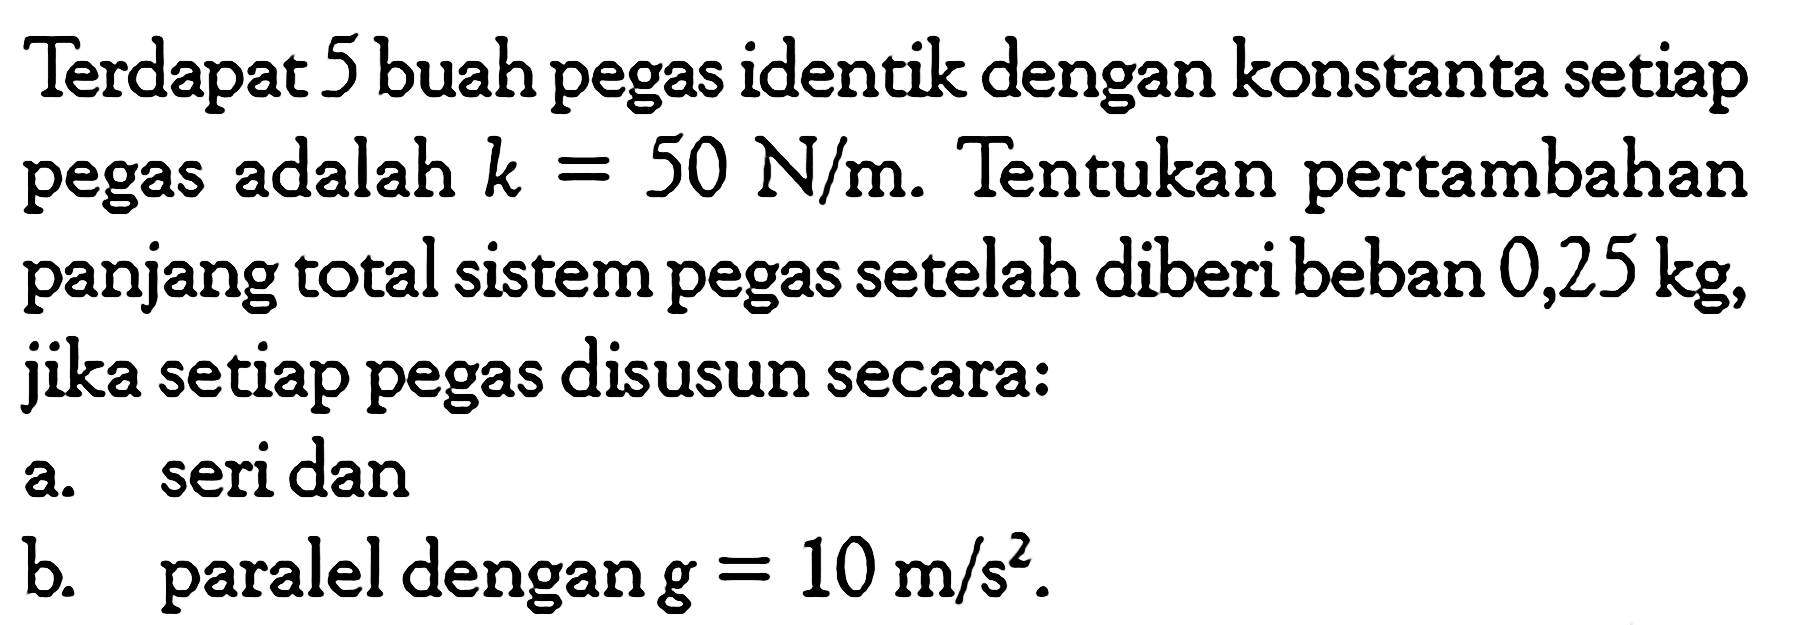 Terdapat 5 buah pegas identik dengan konstanta setiap pegas adalah  k=50 N/m . Tentukan pertambahan panjang total sistem pegas setelah diberi beban  0,25 kg , jika setiap pegas disusun secara: a. seri dan b. paralel dengan  g=10 m/s^2 . 